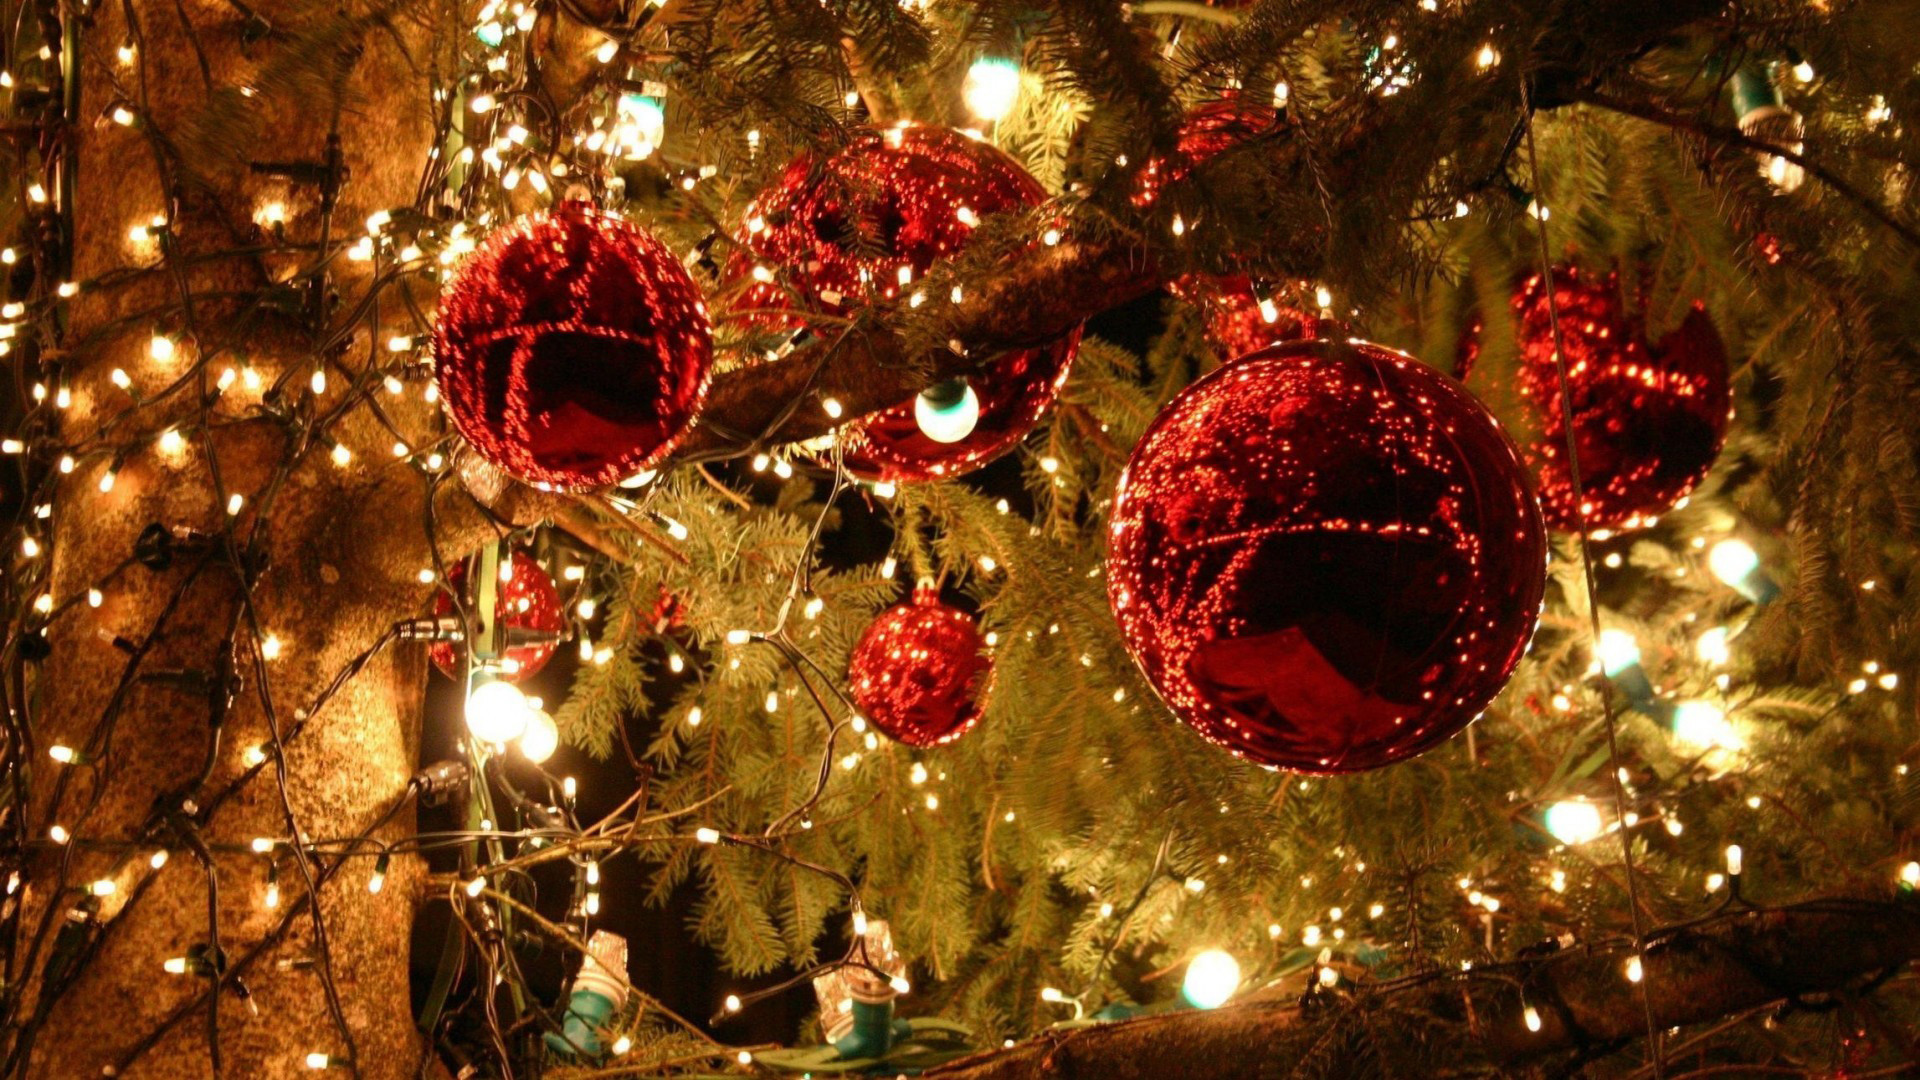 weihnachtstapete hd,weihnachtsschmuck,weihnachtsdekoration,weihnachten,weihnachtsbaum,baum